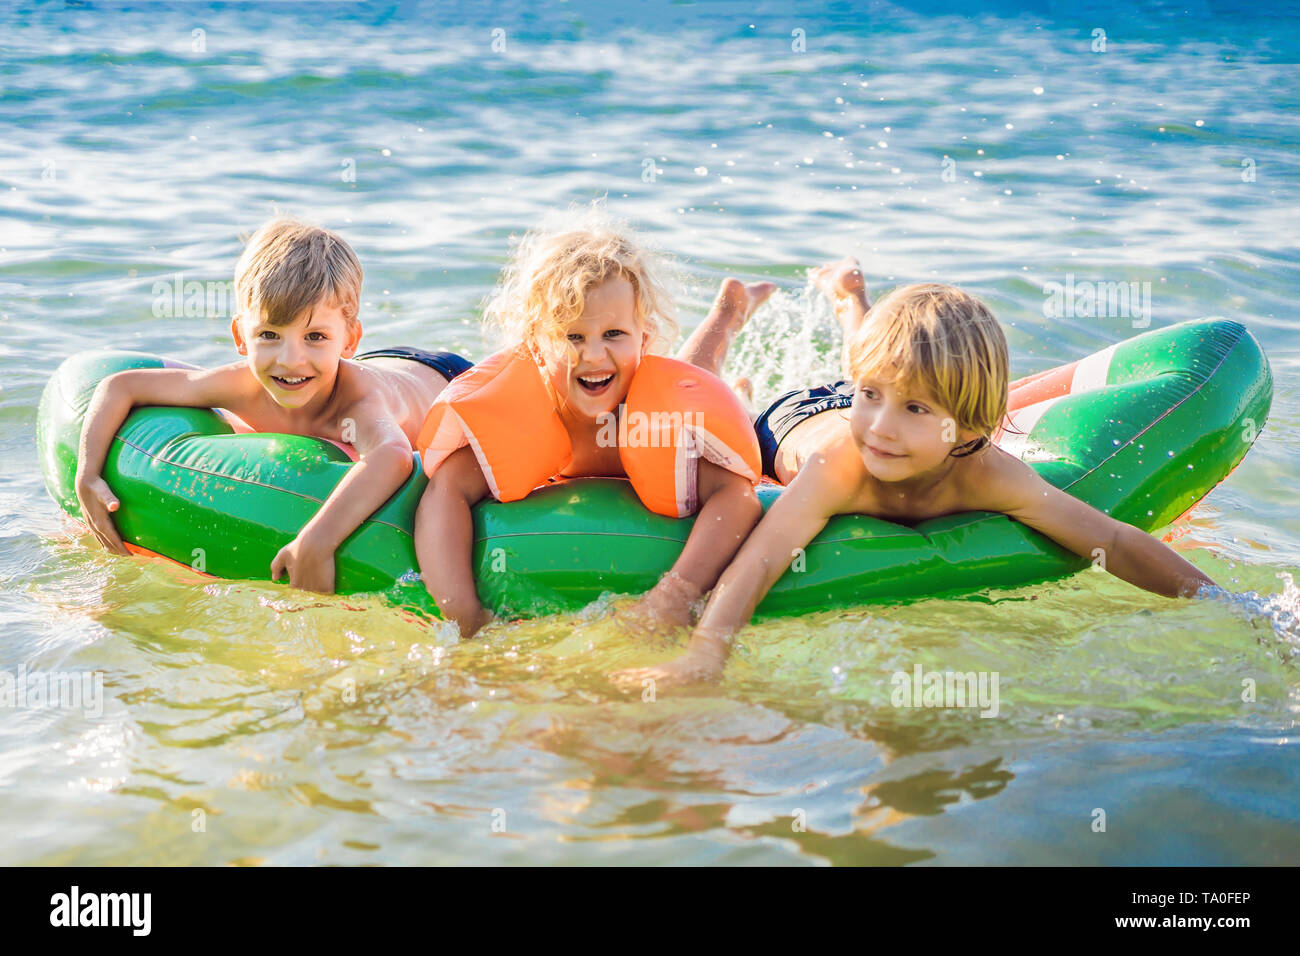 Kinder schwimmen im Meer auf einer aufblasbaren Matratze und Spaß haben Stockfoto